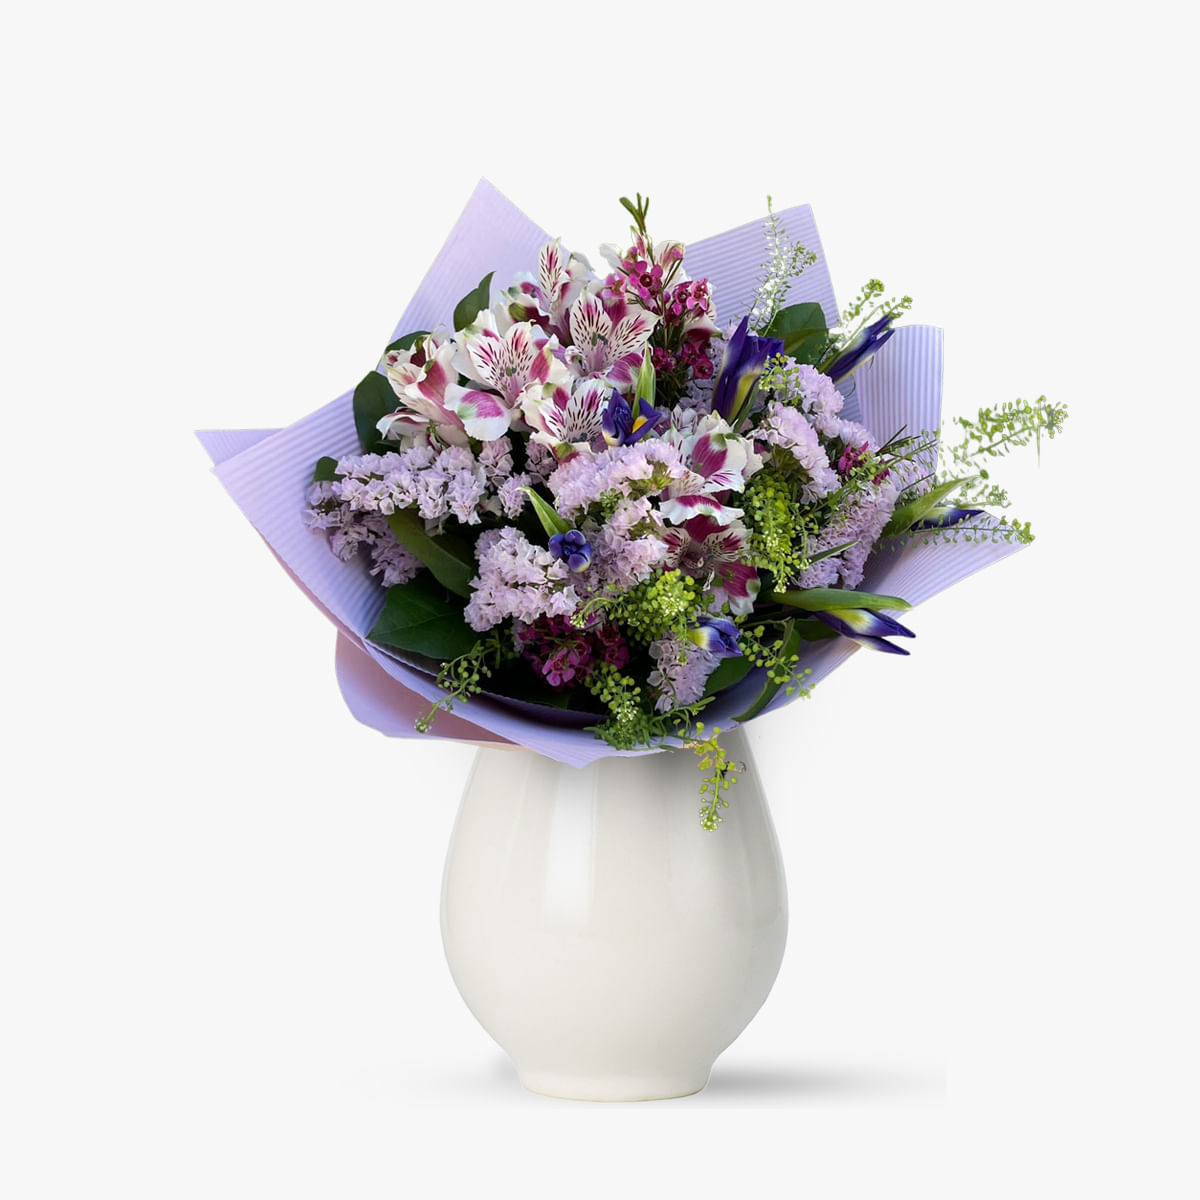 Buchet de flori cu alstroemeria, iris, wax, limonium Gradina de vara